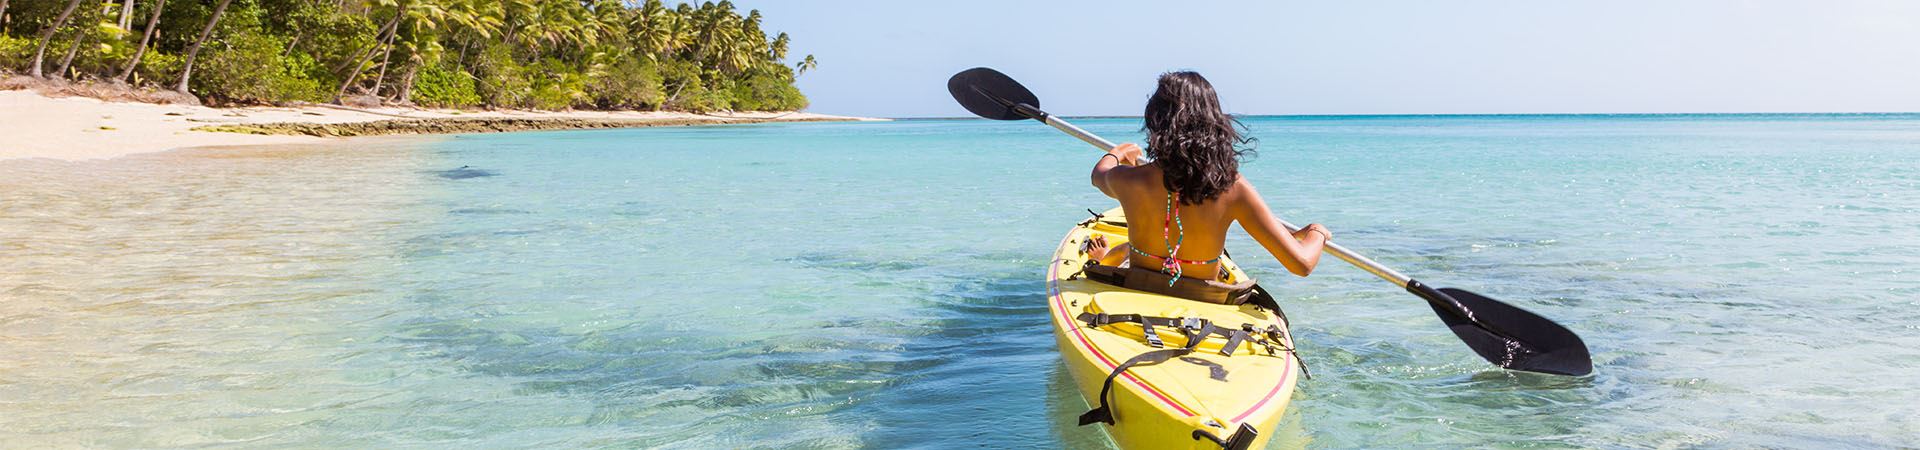 Esta imagem mostra uma rapariga de costas a andar de canoa no mar. A canoa é amarela e ao fundo da imagem vê-se areia e alguma vegetação, que indica que está perto da praia.